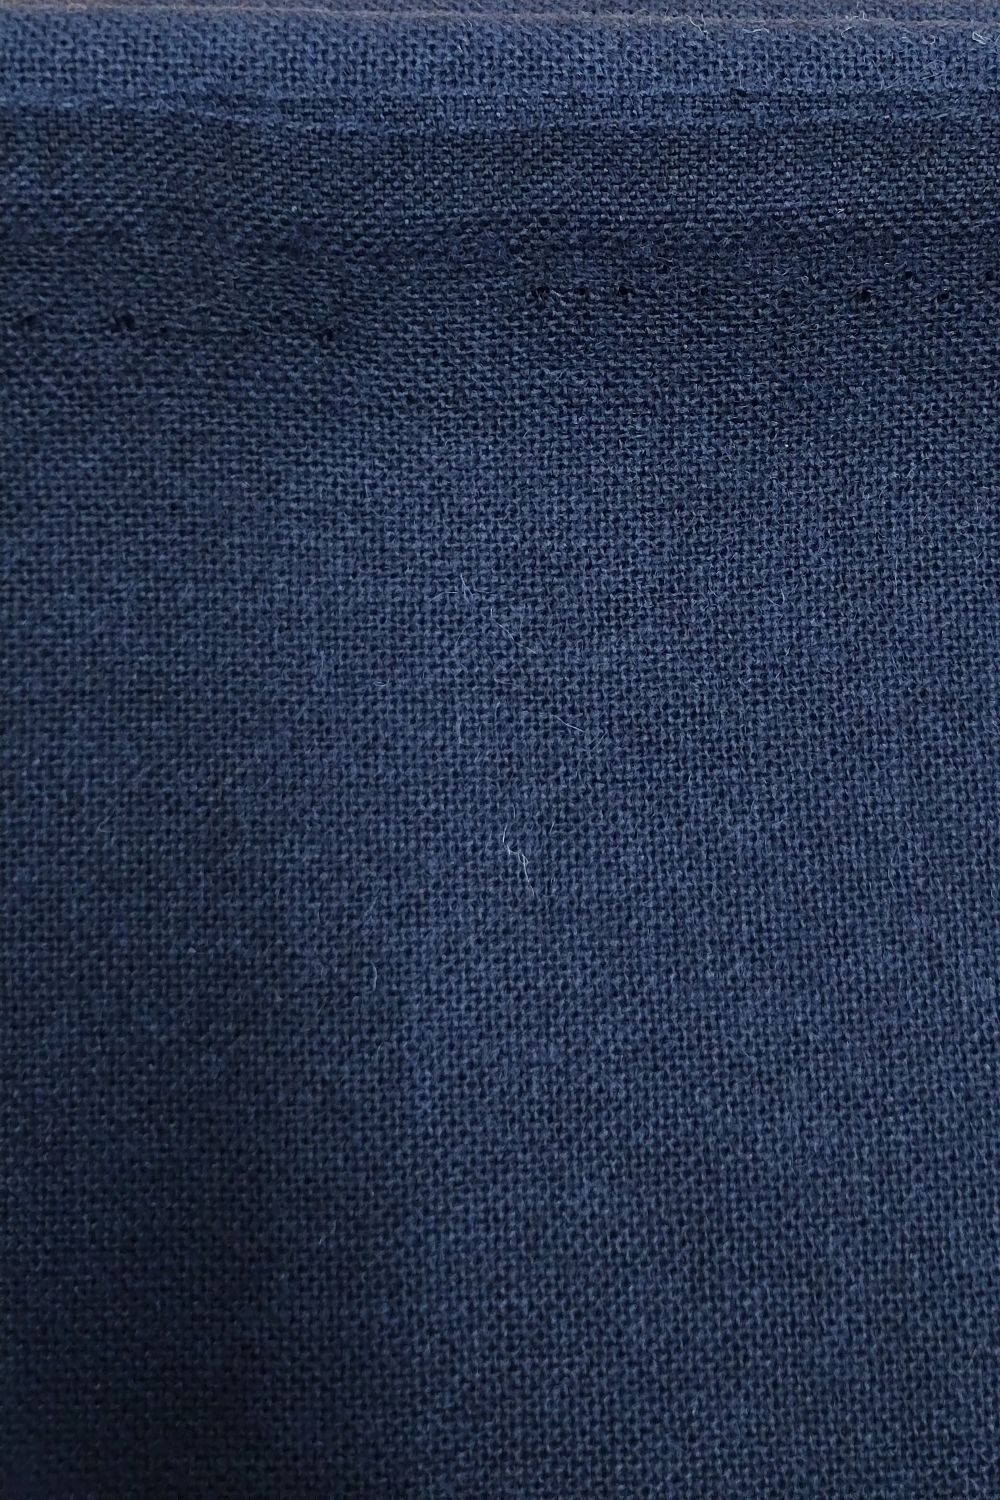 Restebit av blå toskaft ull, 75 cm